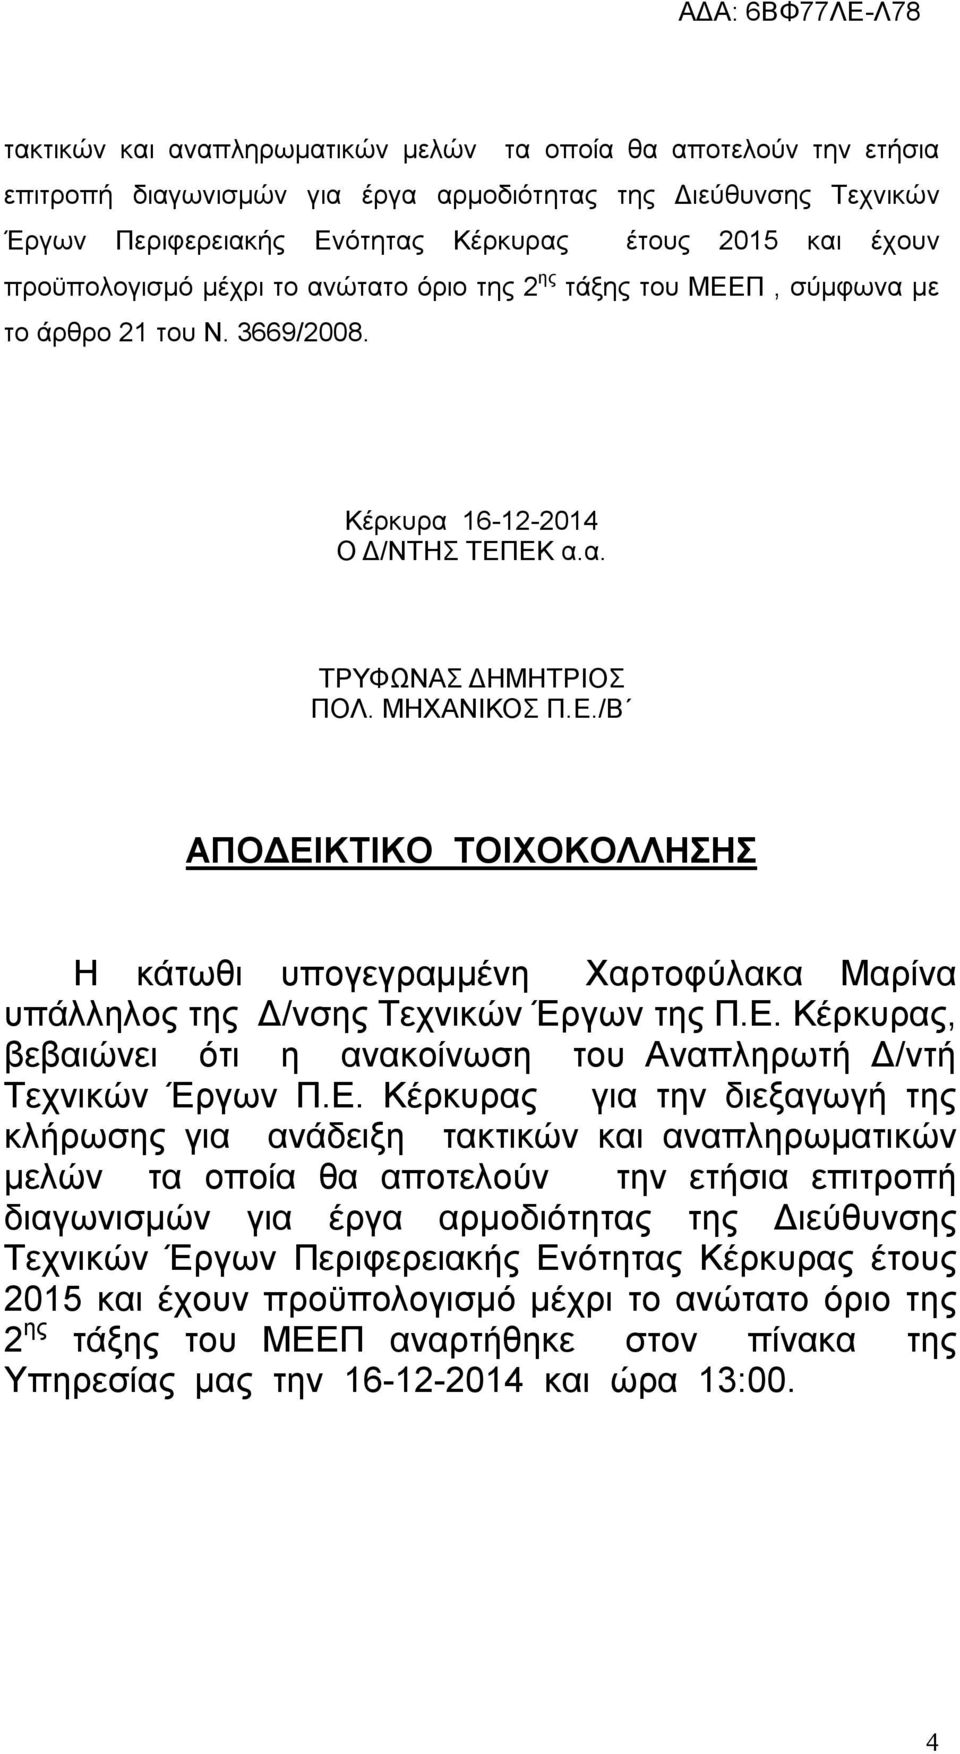 Ε. Κέρκυρας, βεβαιώνει ότι η ανακοίνωση του Αναπληρωτή Δ/ντή Τεχνικών Έργων Π.Ε. Κέρκυρας για την διεξαγωγή της κλήρωσης για ανάδειξη  προϋπολογισμό μέχρι το ανώτατο όριο της 2 ης τάξης του ΜΕΕΠ αναρτήθηκε στον πίνακα της Υπηρεσίας μας την 16-12-2014 και ώρα 13:00.